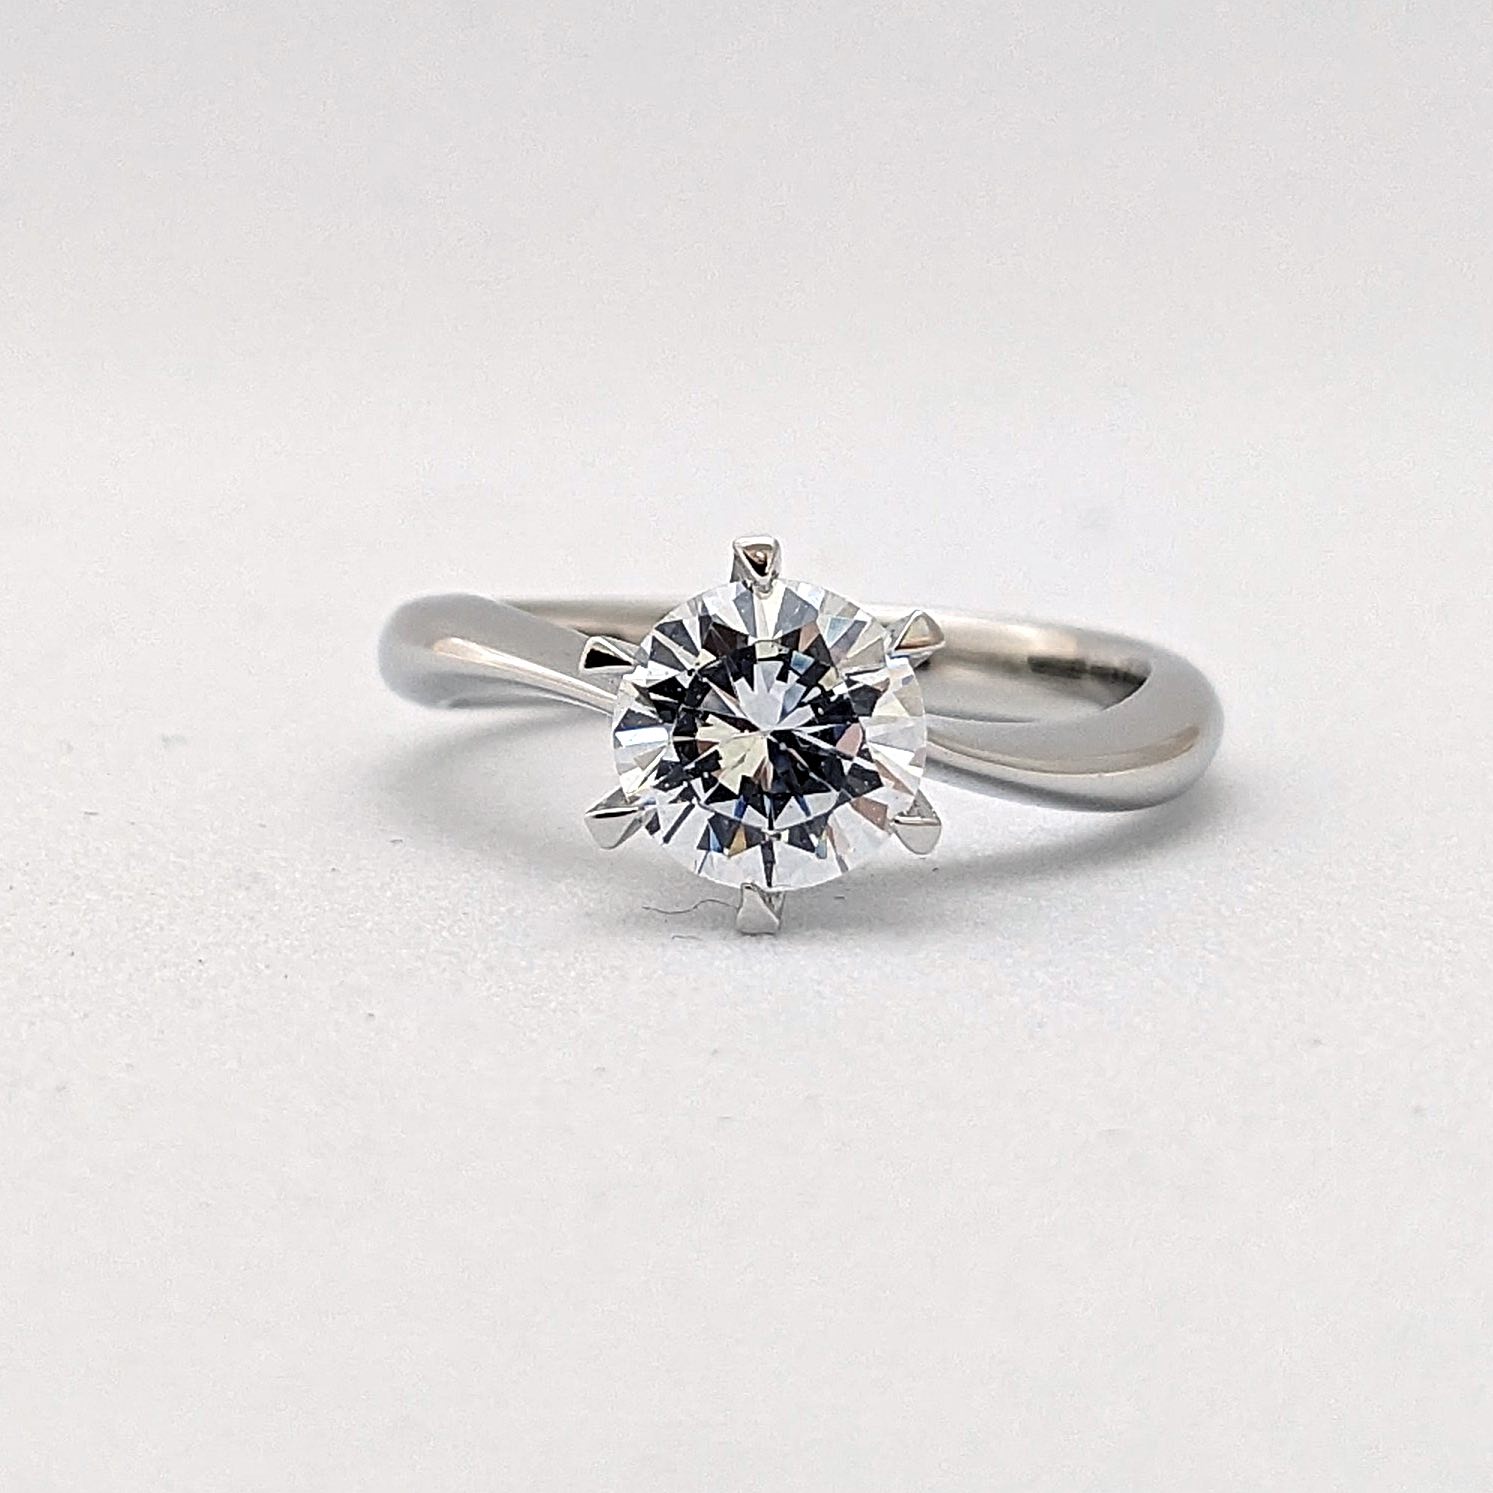 １カラット版：アームデザインが新しいティファニーセッティングの婚約指輪